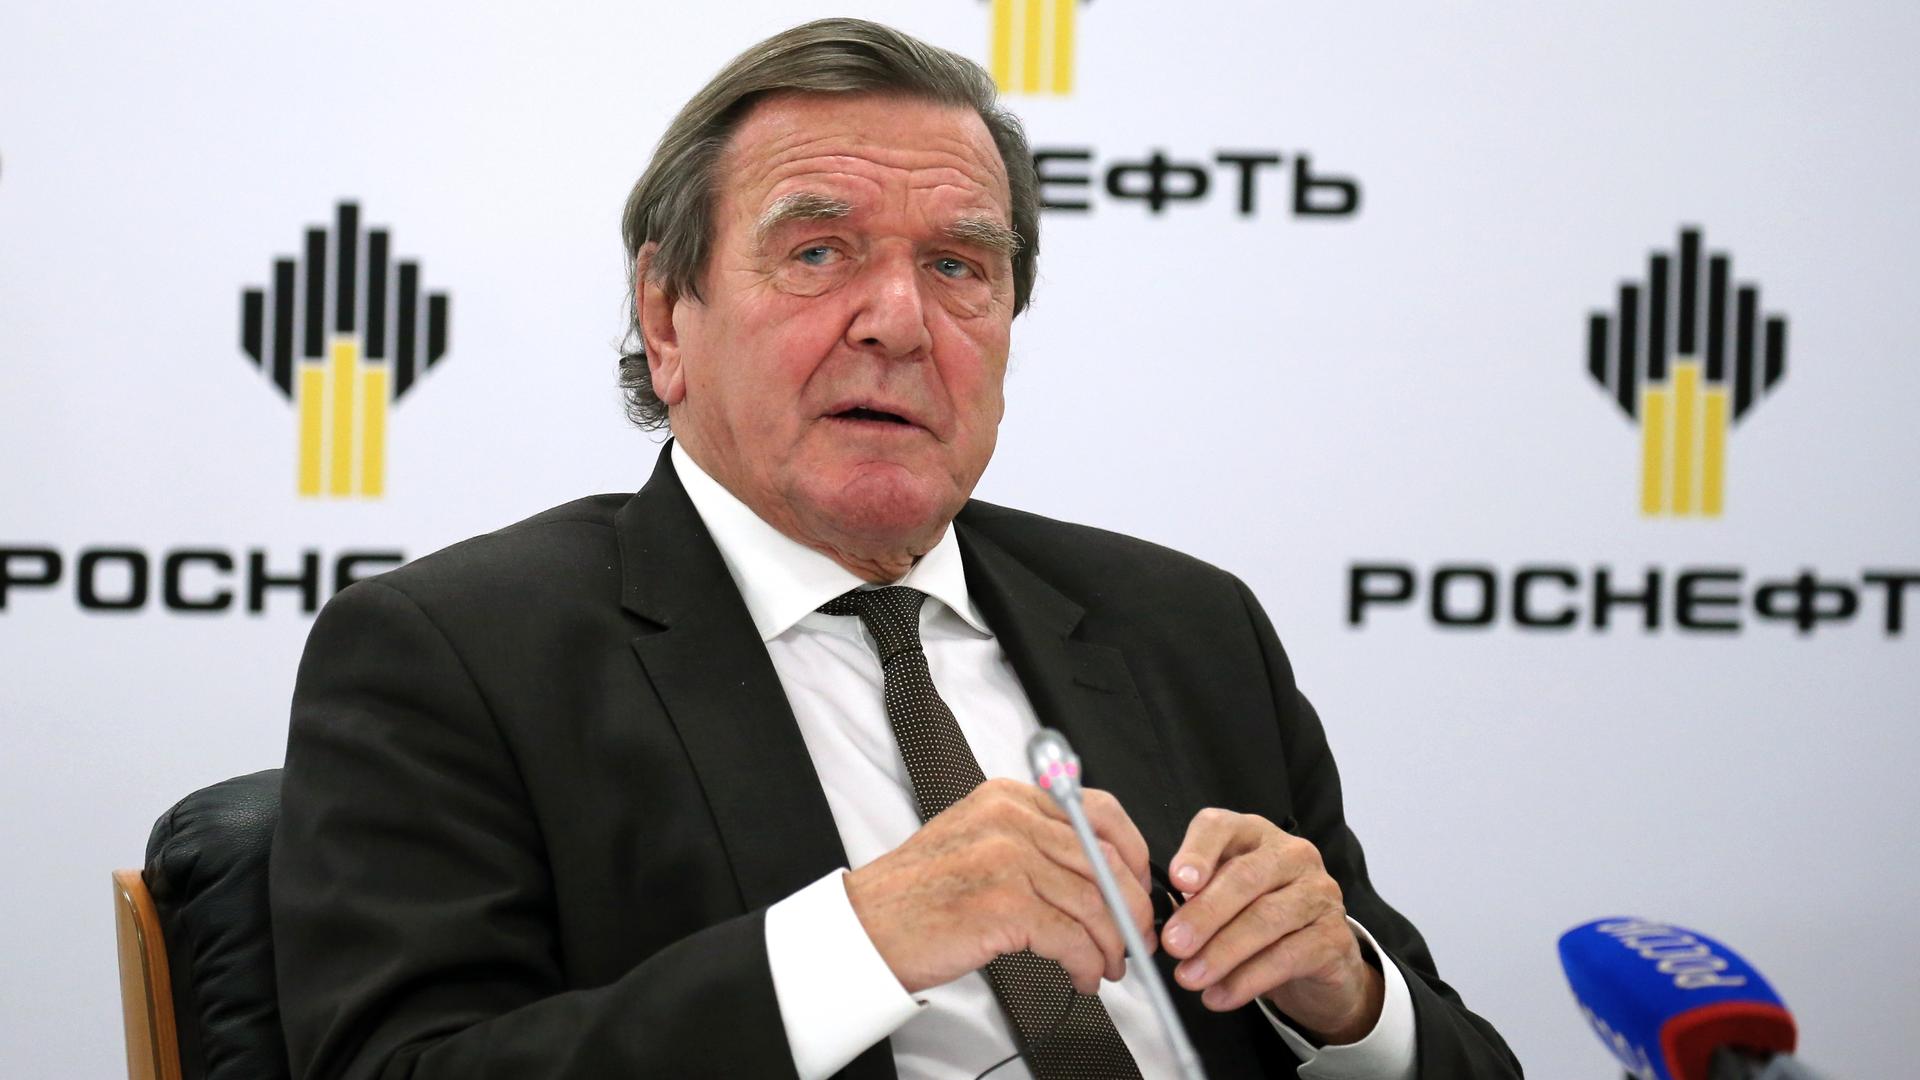 Der frühere Bundeskanzler Gerhard Schröder vor dem Logo des russischen Erdölkonzerns Rosneft, in dessen Aufsichtsrat er sitzt.